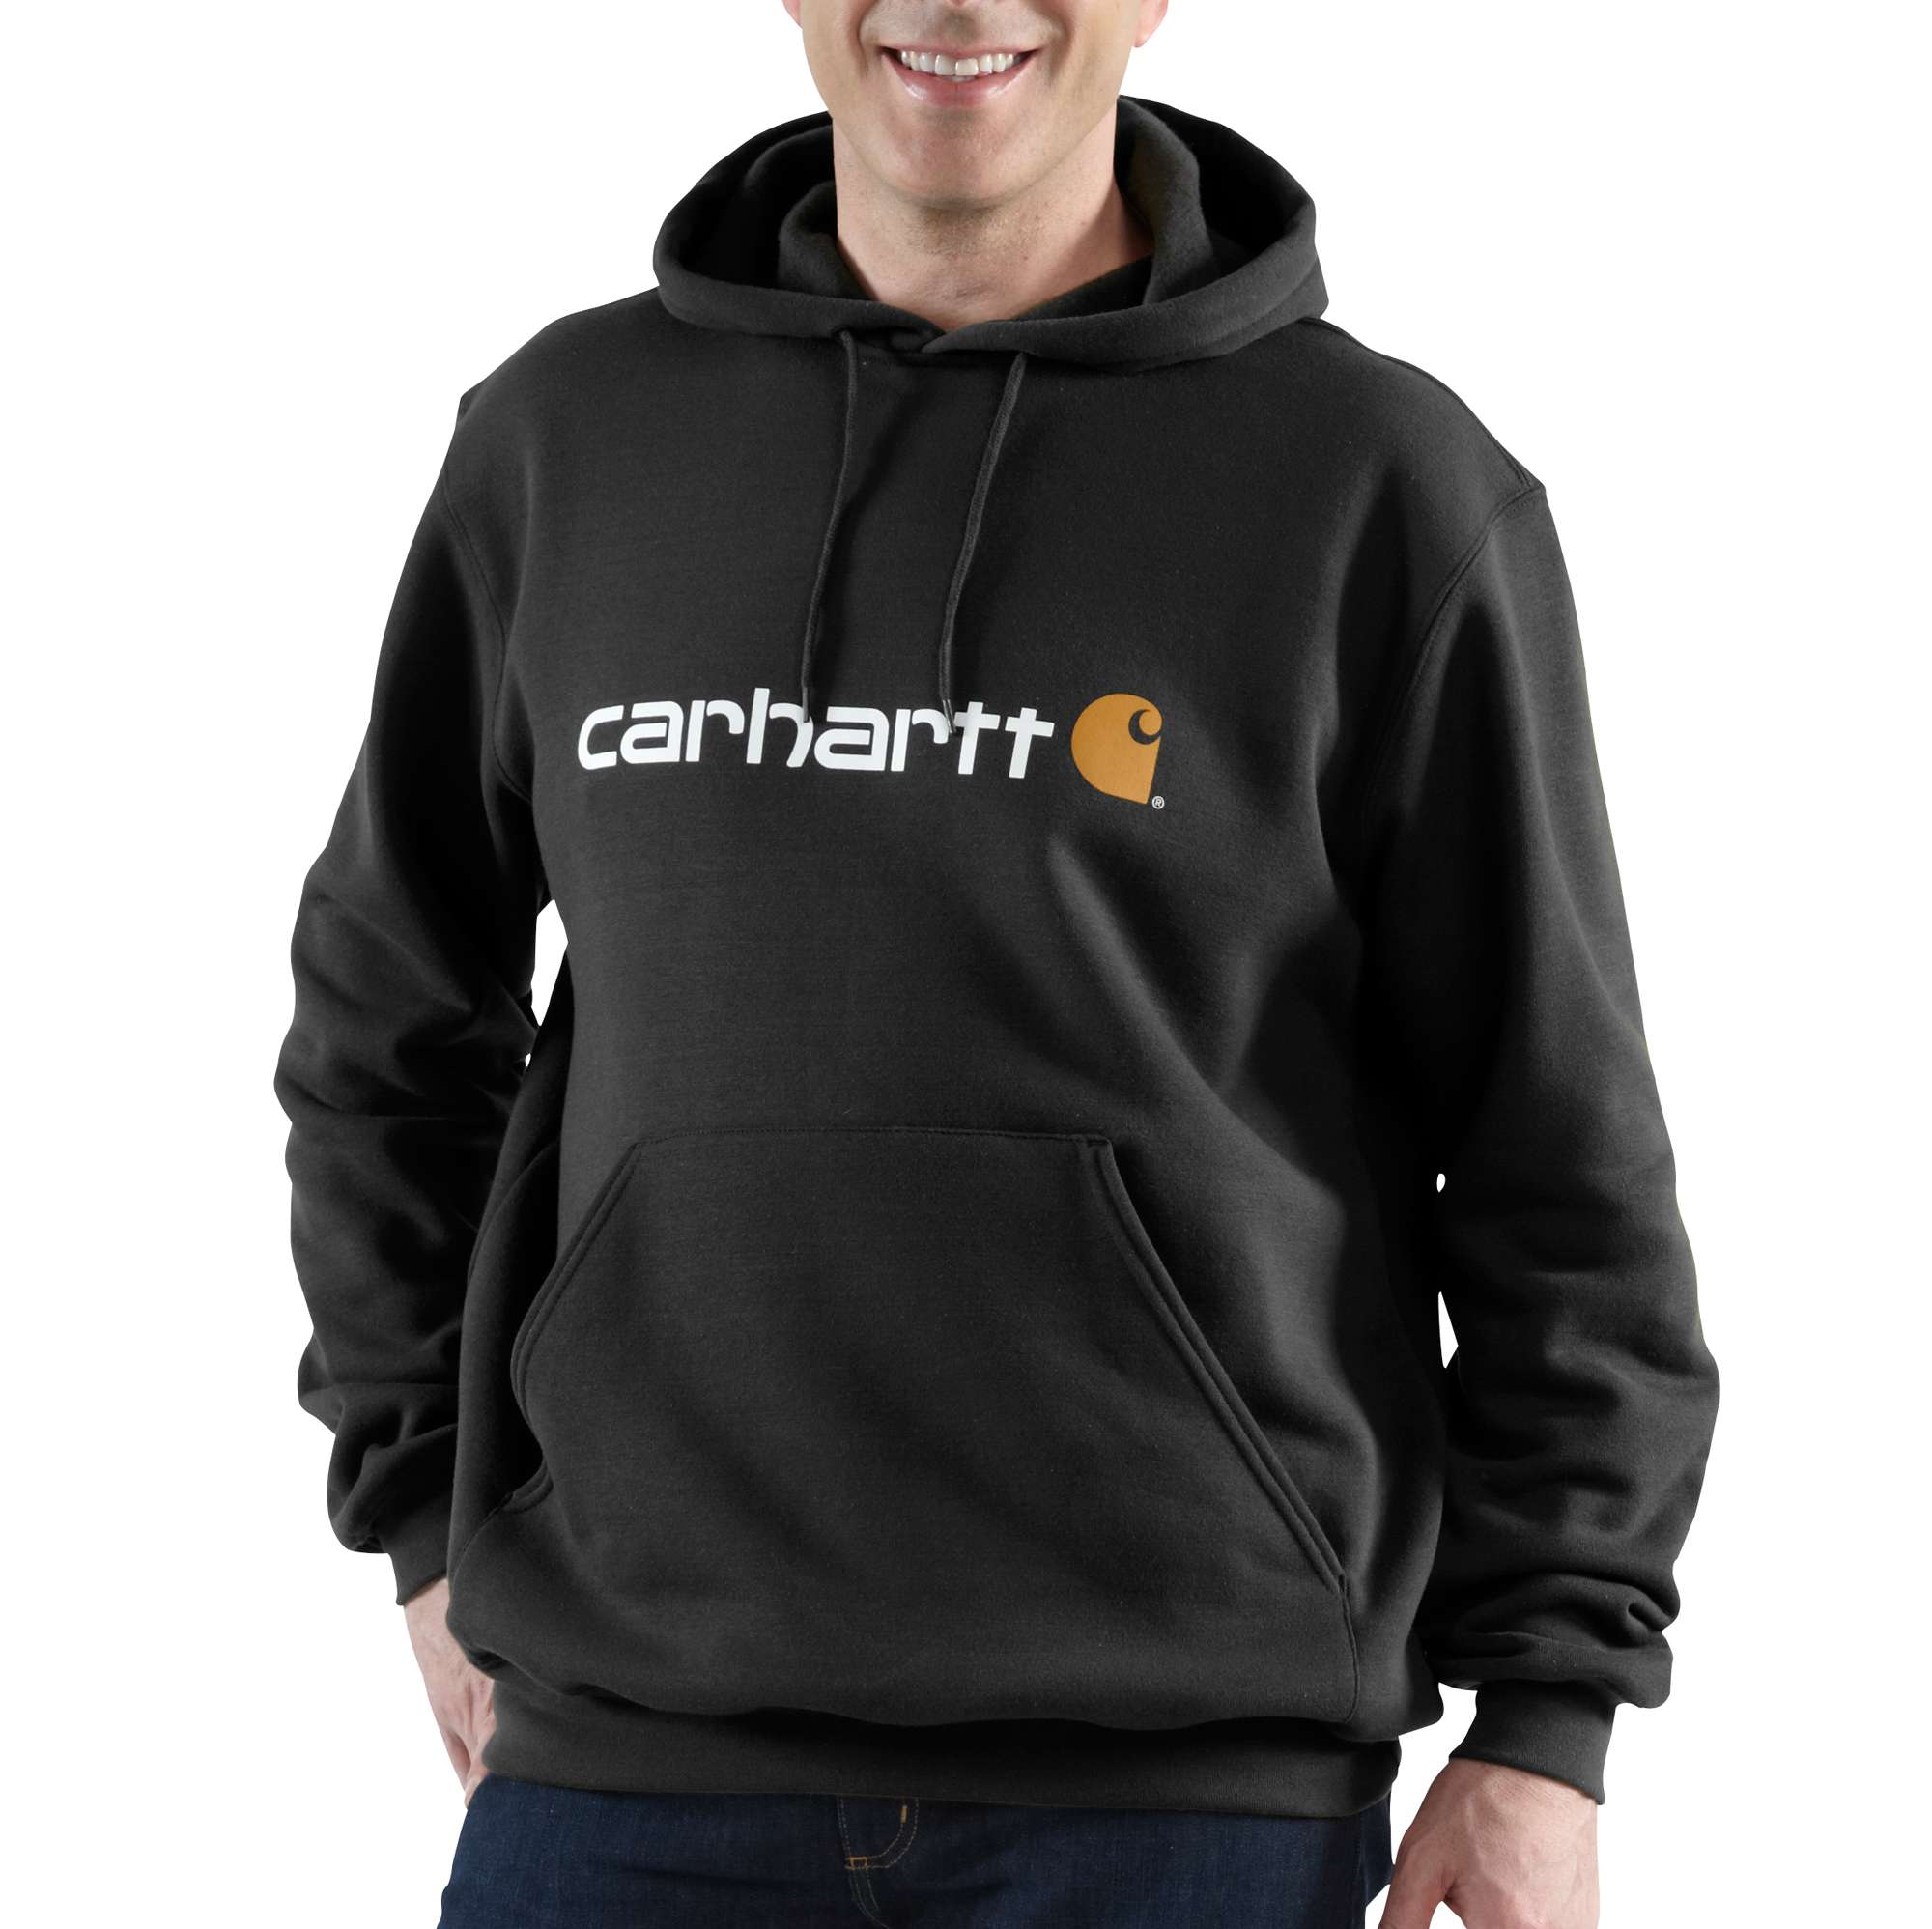 Carhartt Hoodies - Loose fit herensweater met capuchon en carhartt-logo Zwart - S